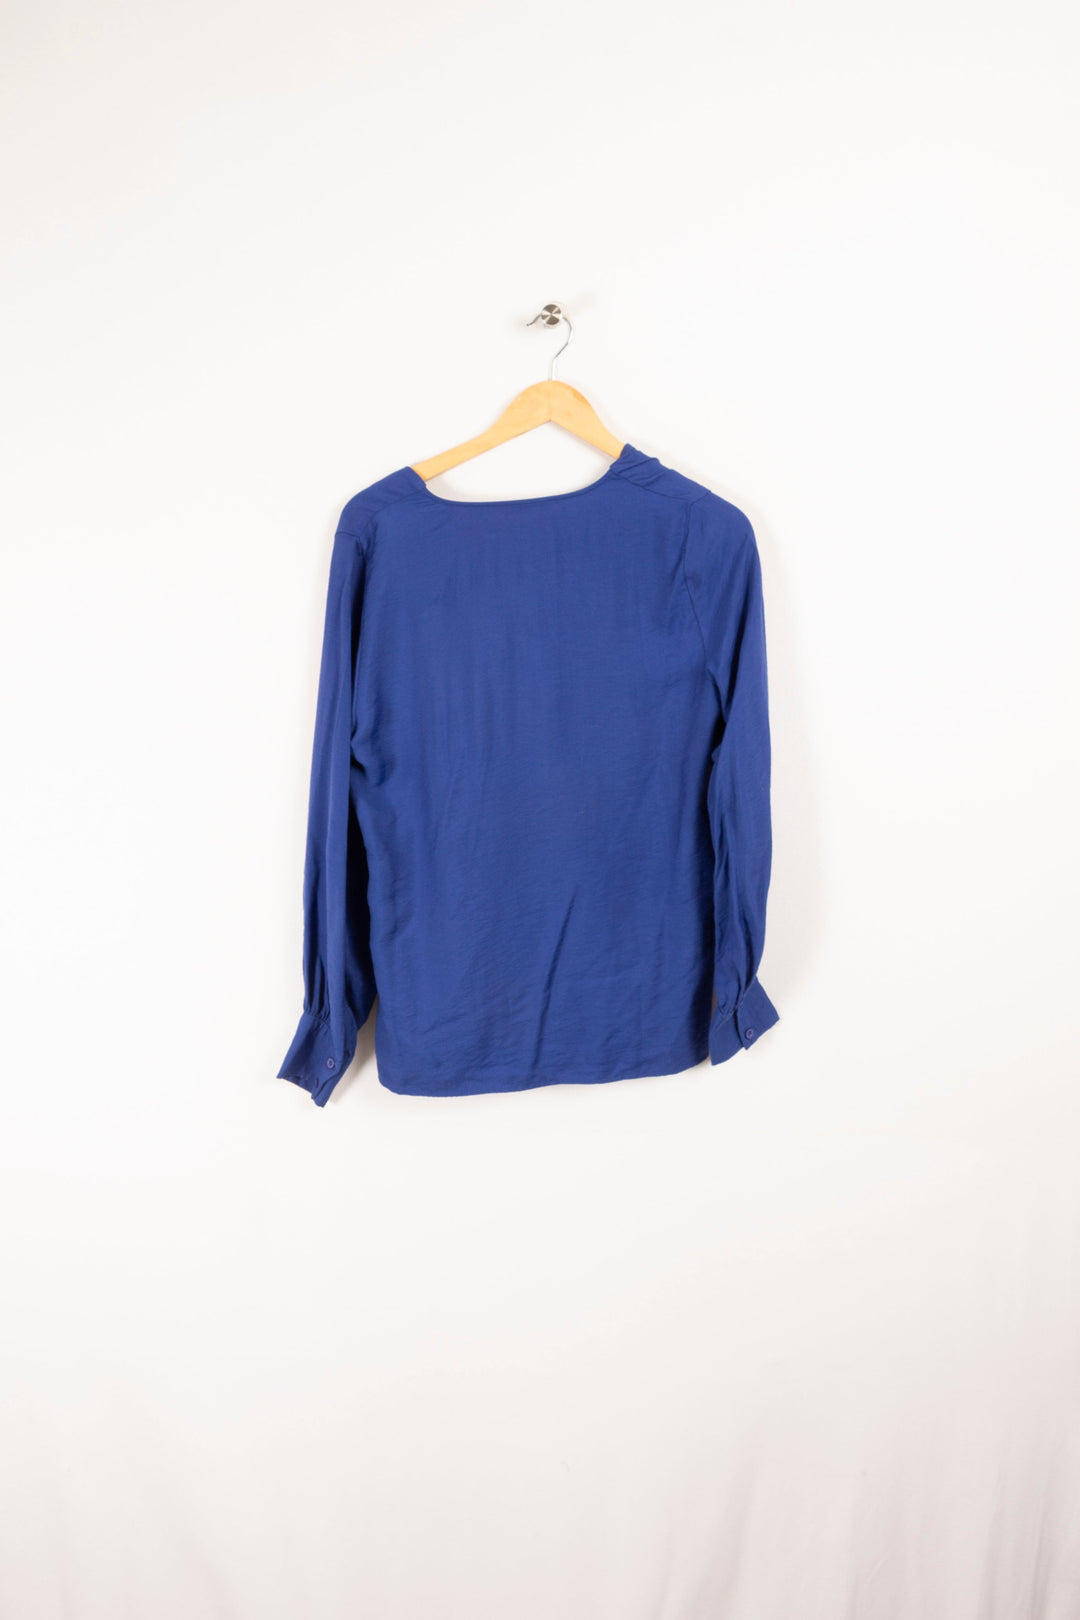 Blauer Pullover – Größe M/38